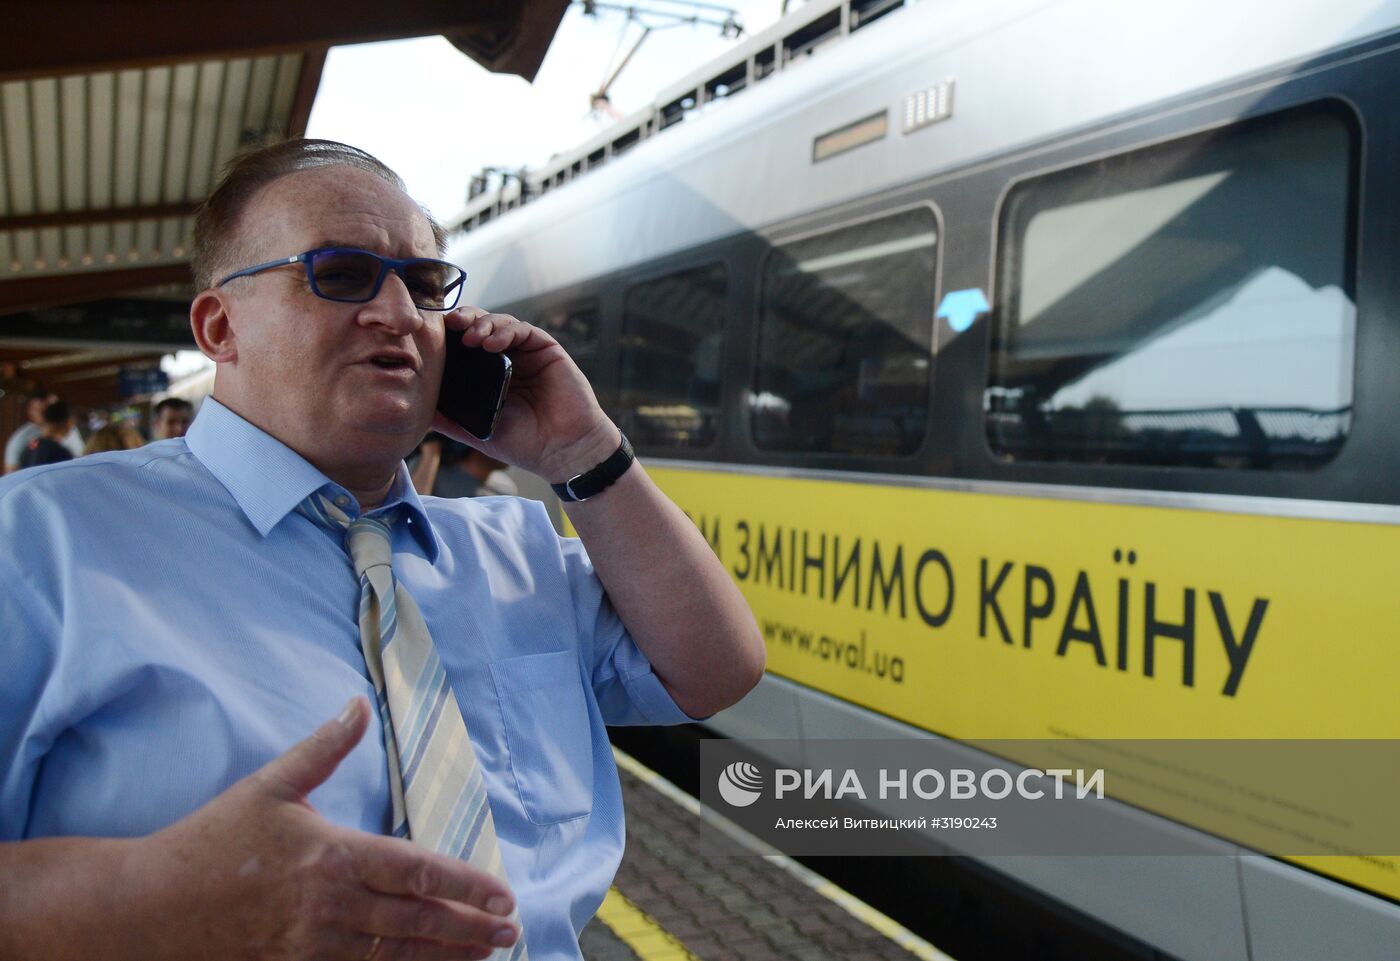 Михаил Саакашвили пересек польско-украинскую границу